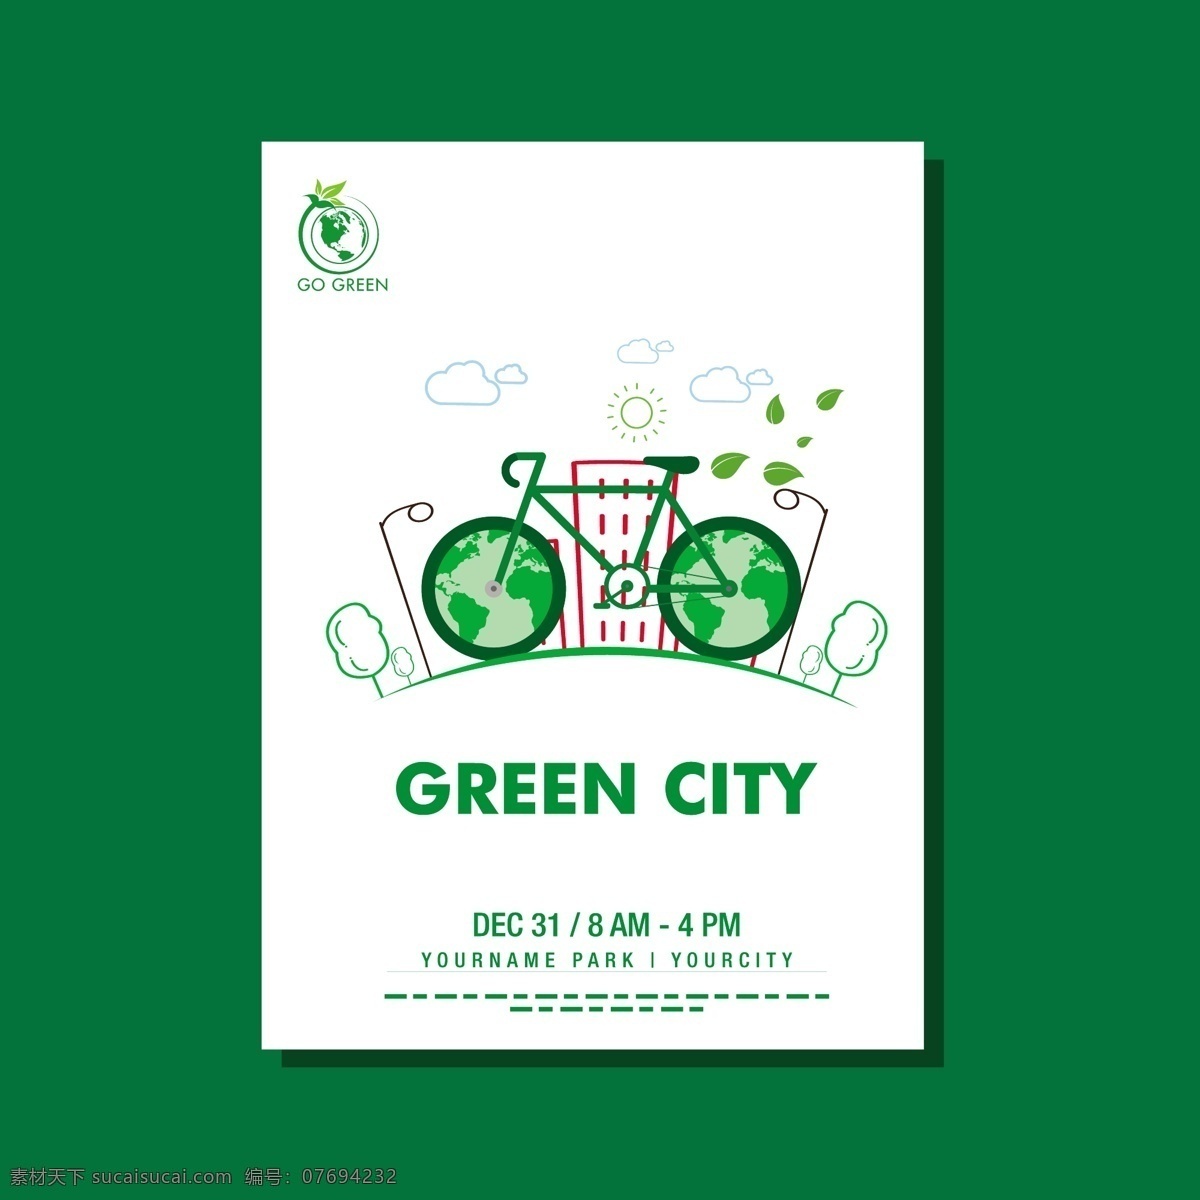 公益环保海报 环保海报 公益 公益海报 爱护环境 自行车 地球 城市 手绘插画